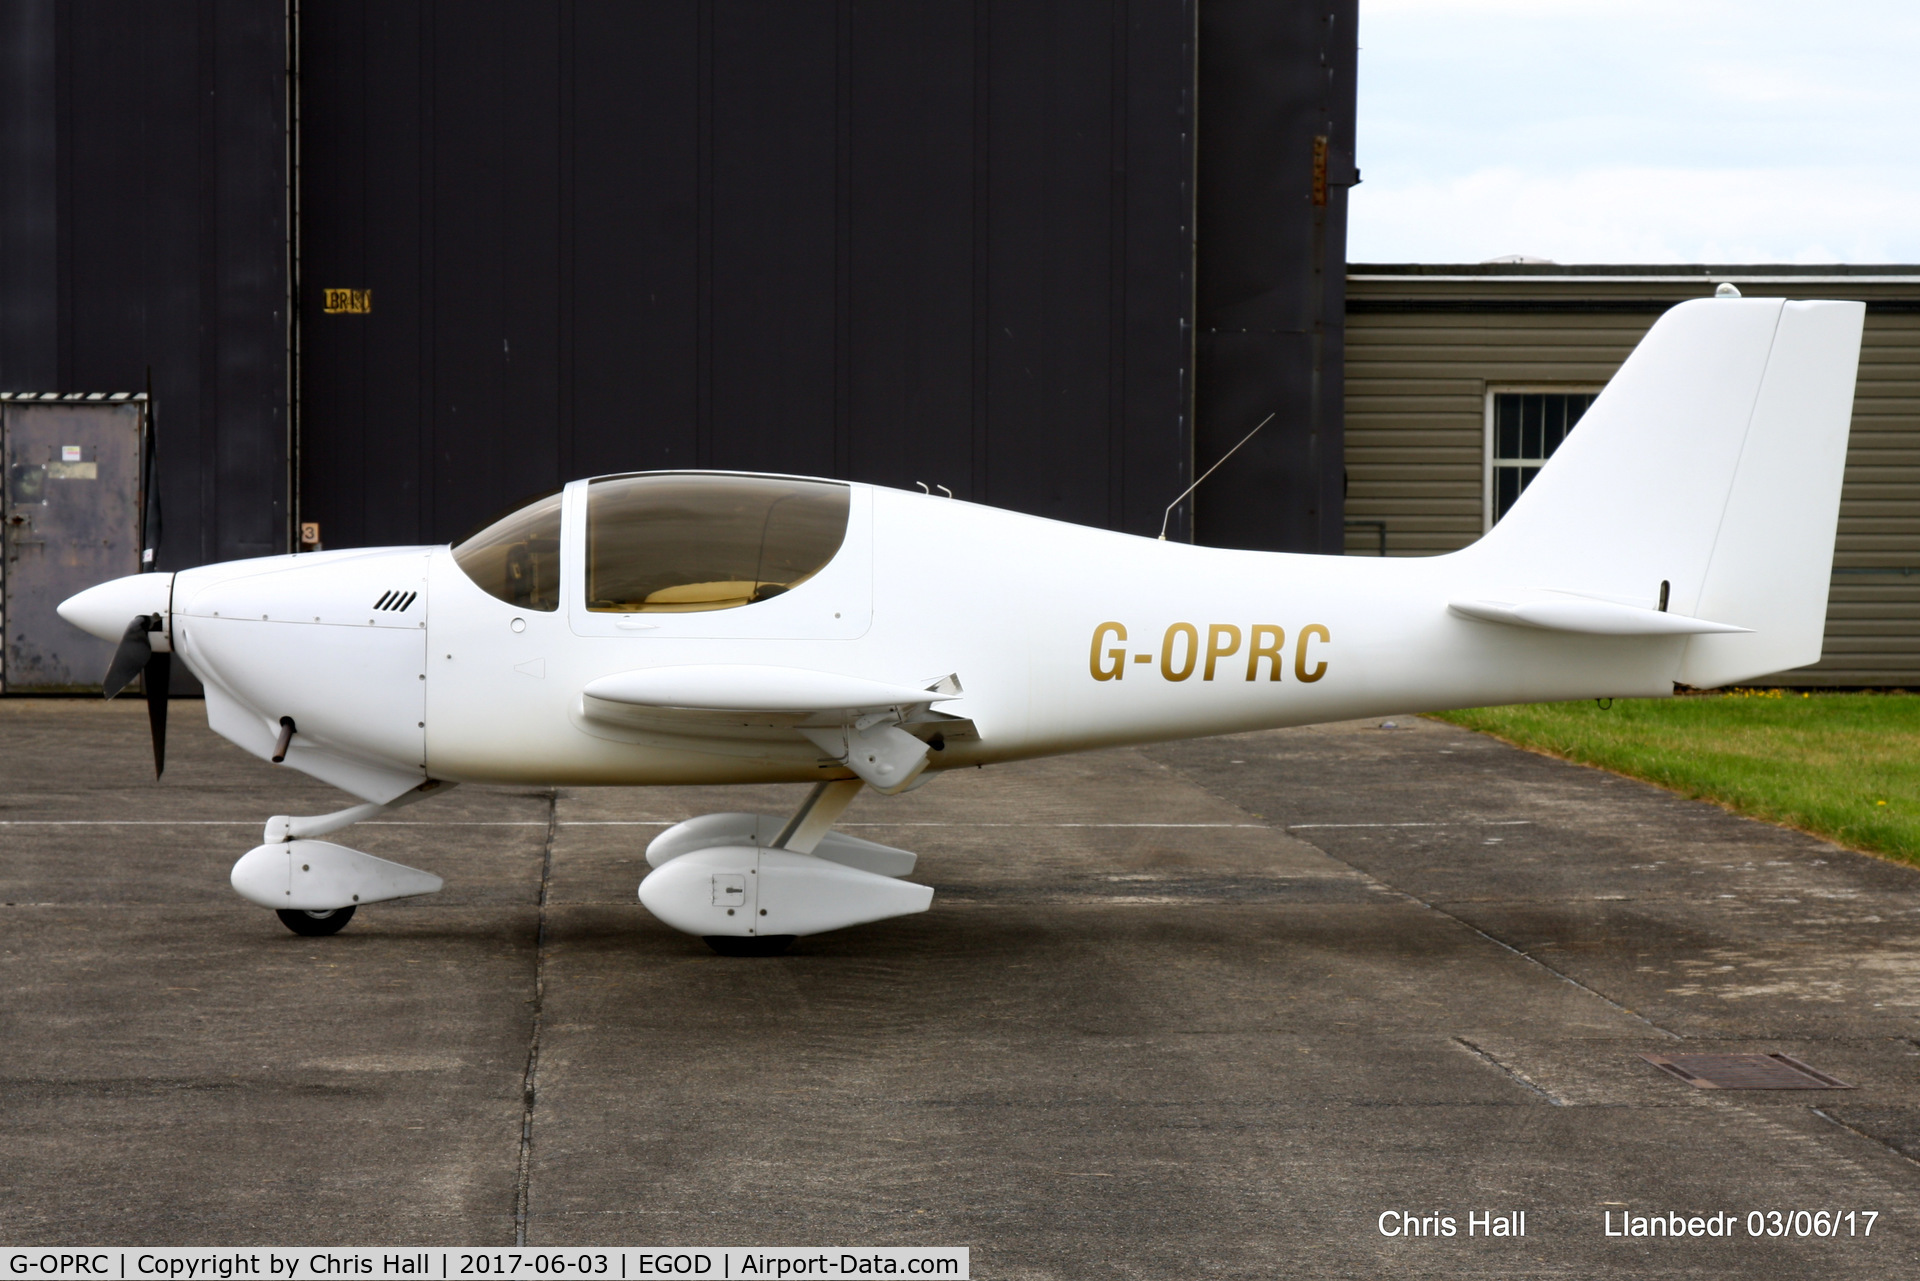 G-OPRC, 2002 Europa XS Tri-Gear C/N PFA 247-13281, at Llanbedr